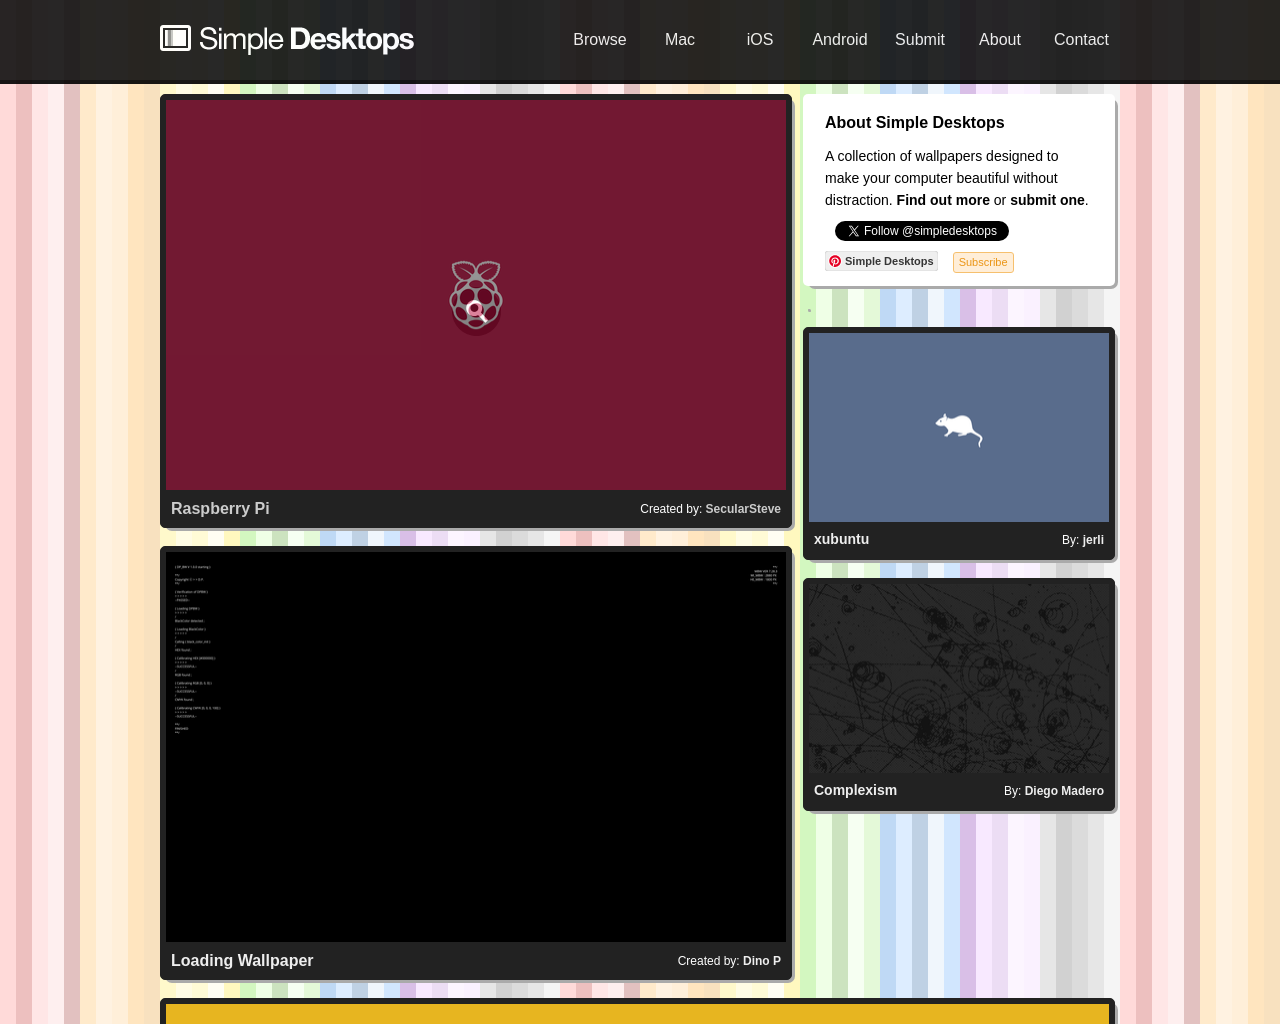 simpledesktops.com